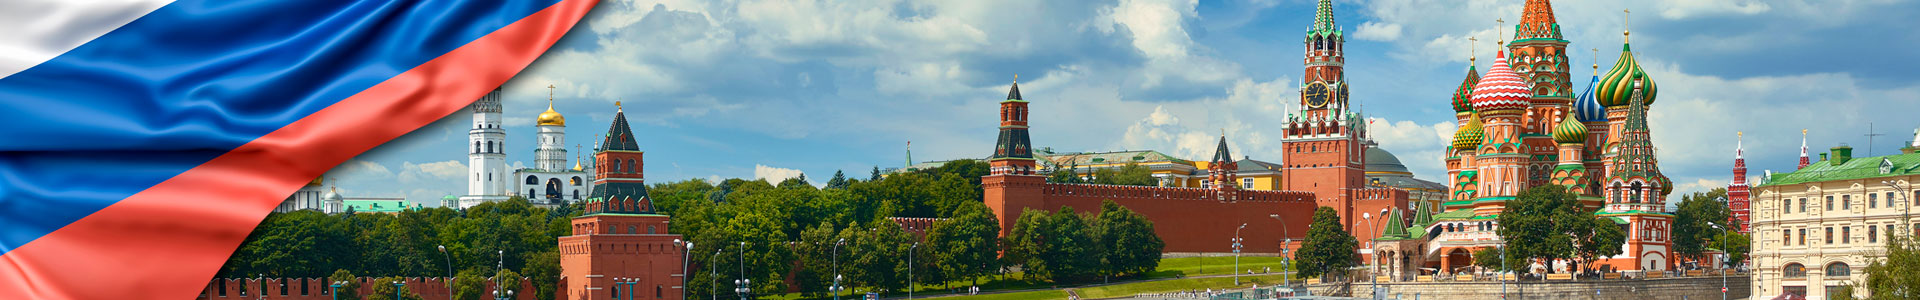 Bandera de Rusia con vista panorámica de la Plaza Roja de Moscú, torres del Kremlin, estrellas y el Reloj Kuranti, iglesia de la Catedral de San Basilio campanario Ivan.